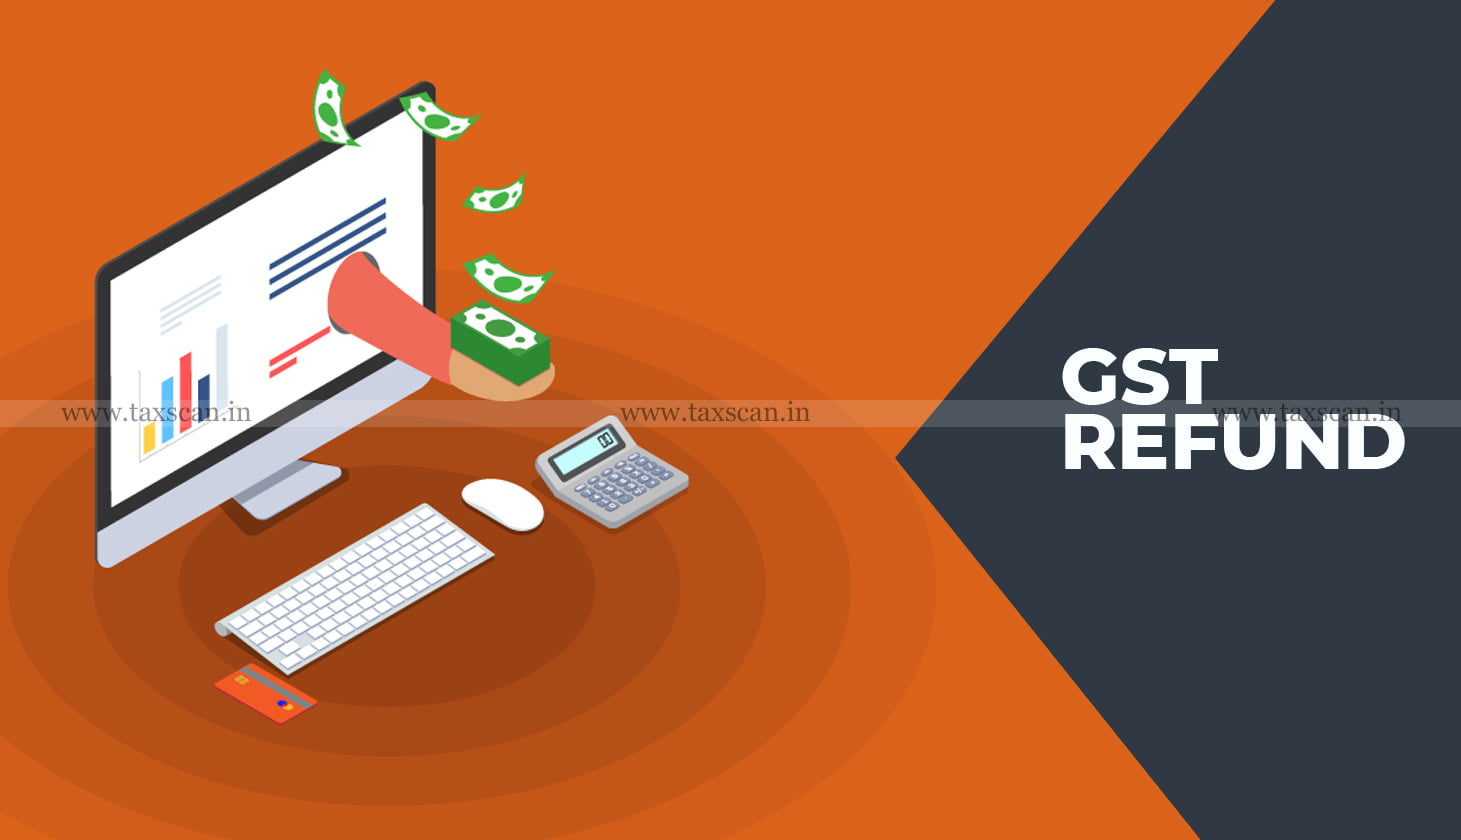 GST Refund - guidelines - GST - refund - refund claim - Rajasthan Govt - Rajasthan Govt issues Guidelines - Taxscan